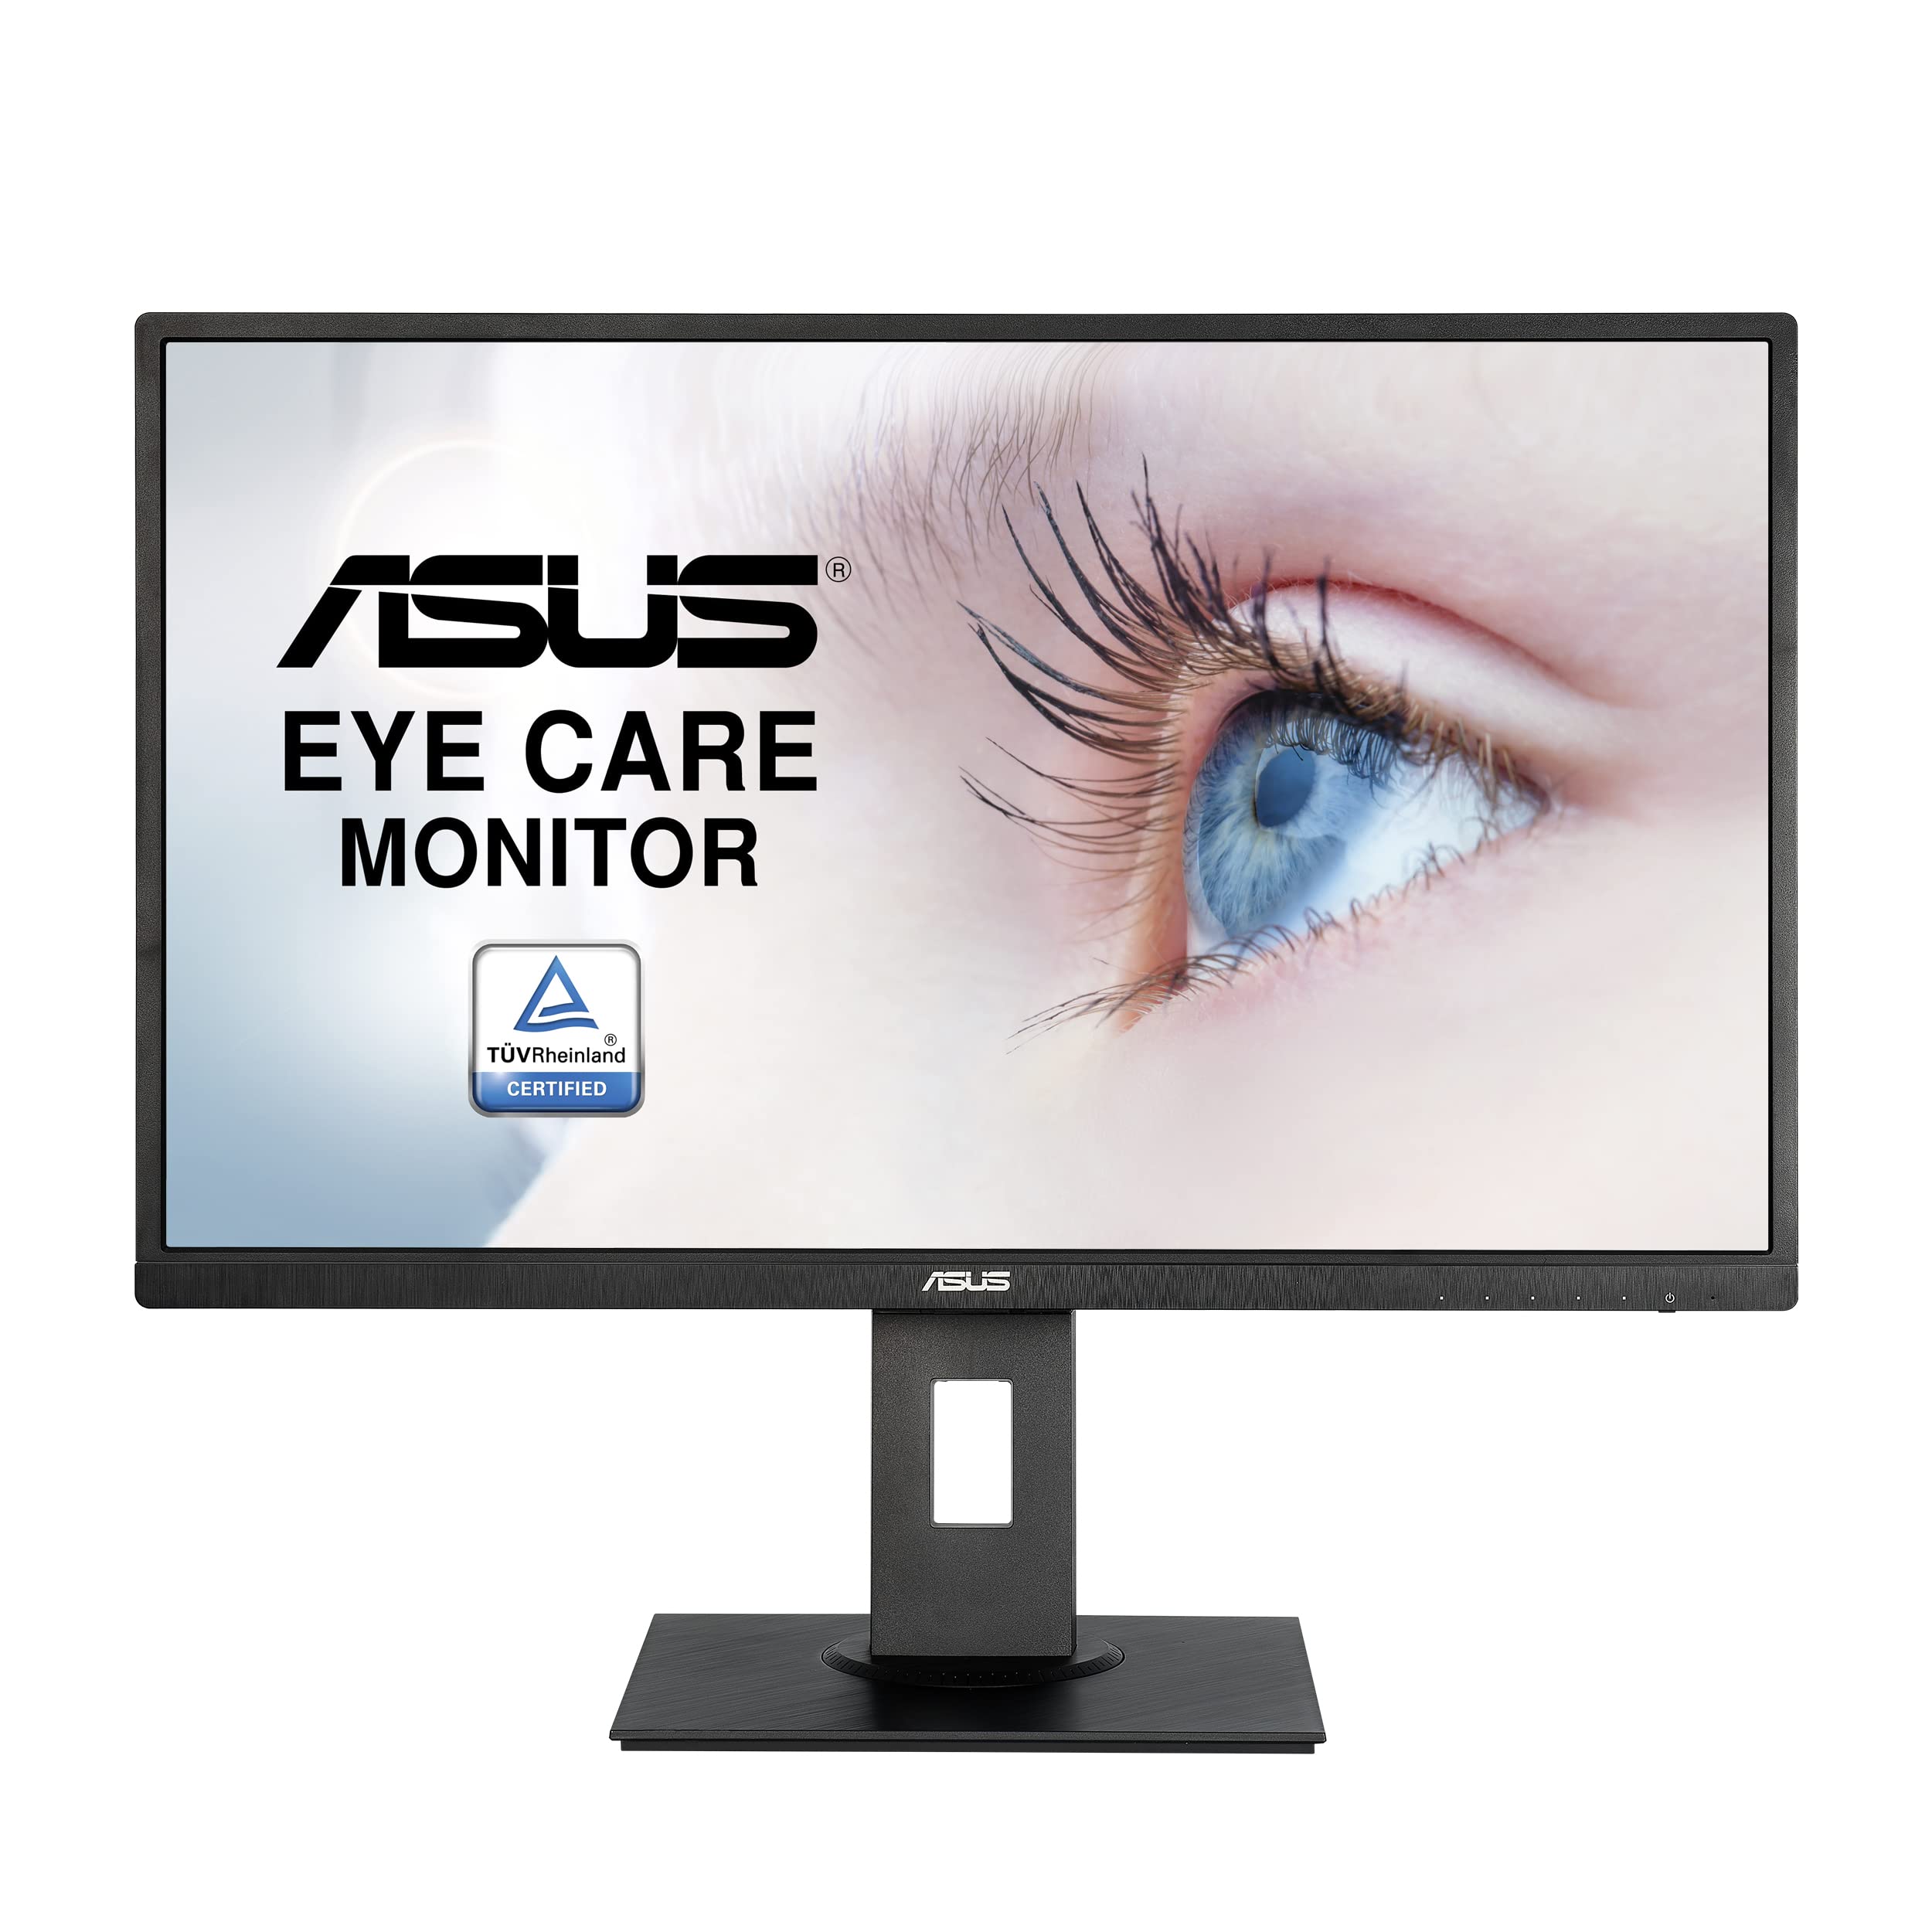 Asus 27” 1080P Monitor (VA279HAL) - Full HD, Built-in S...